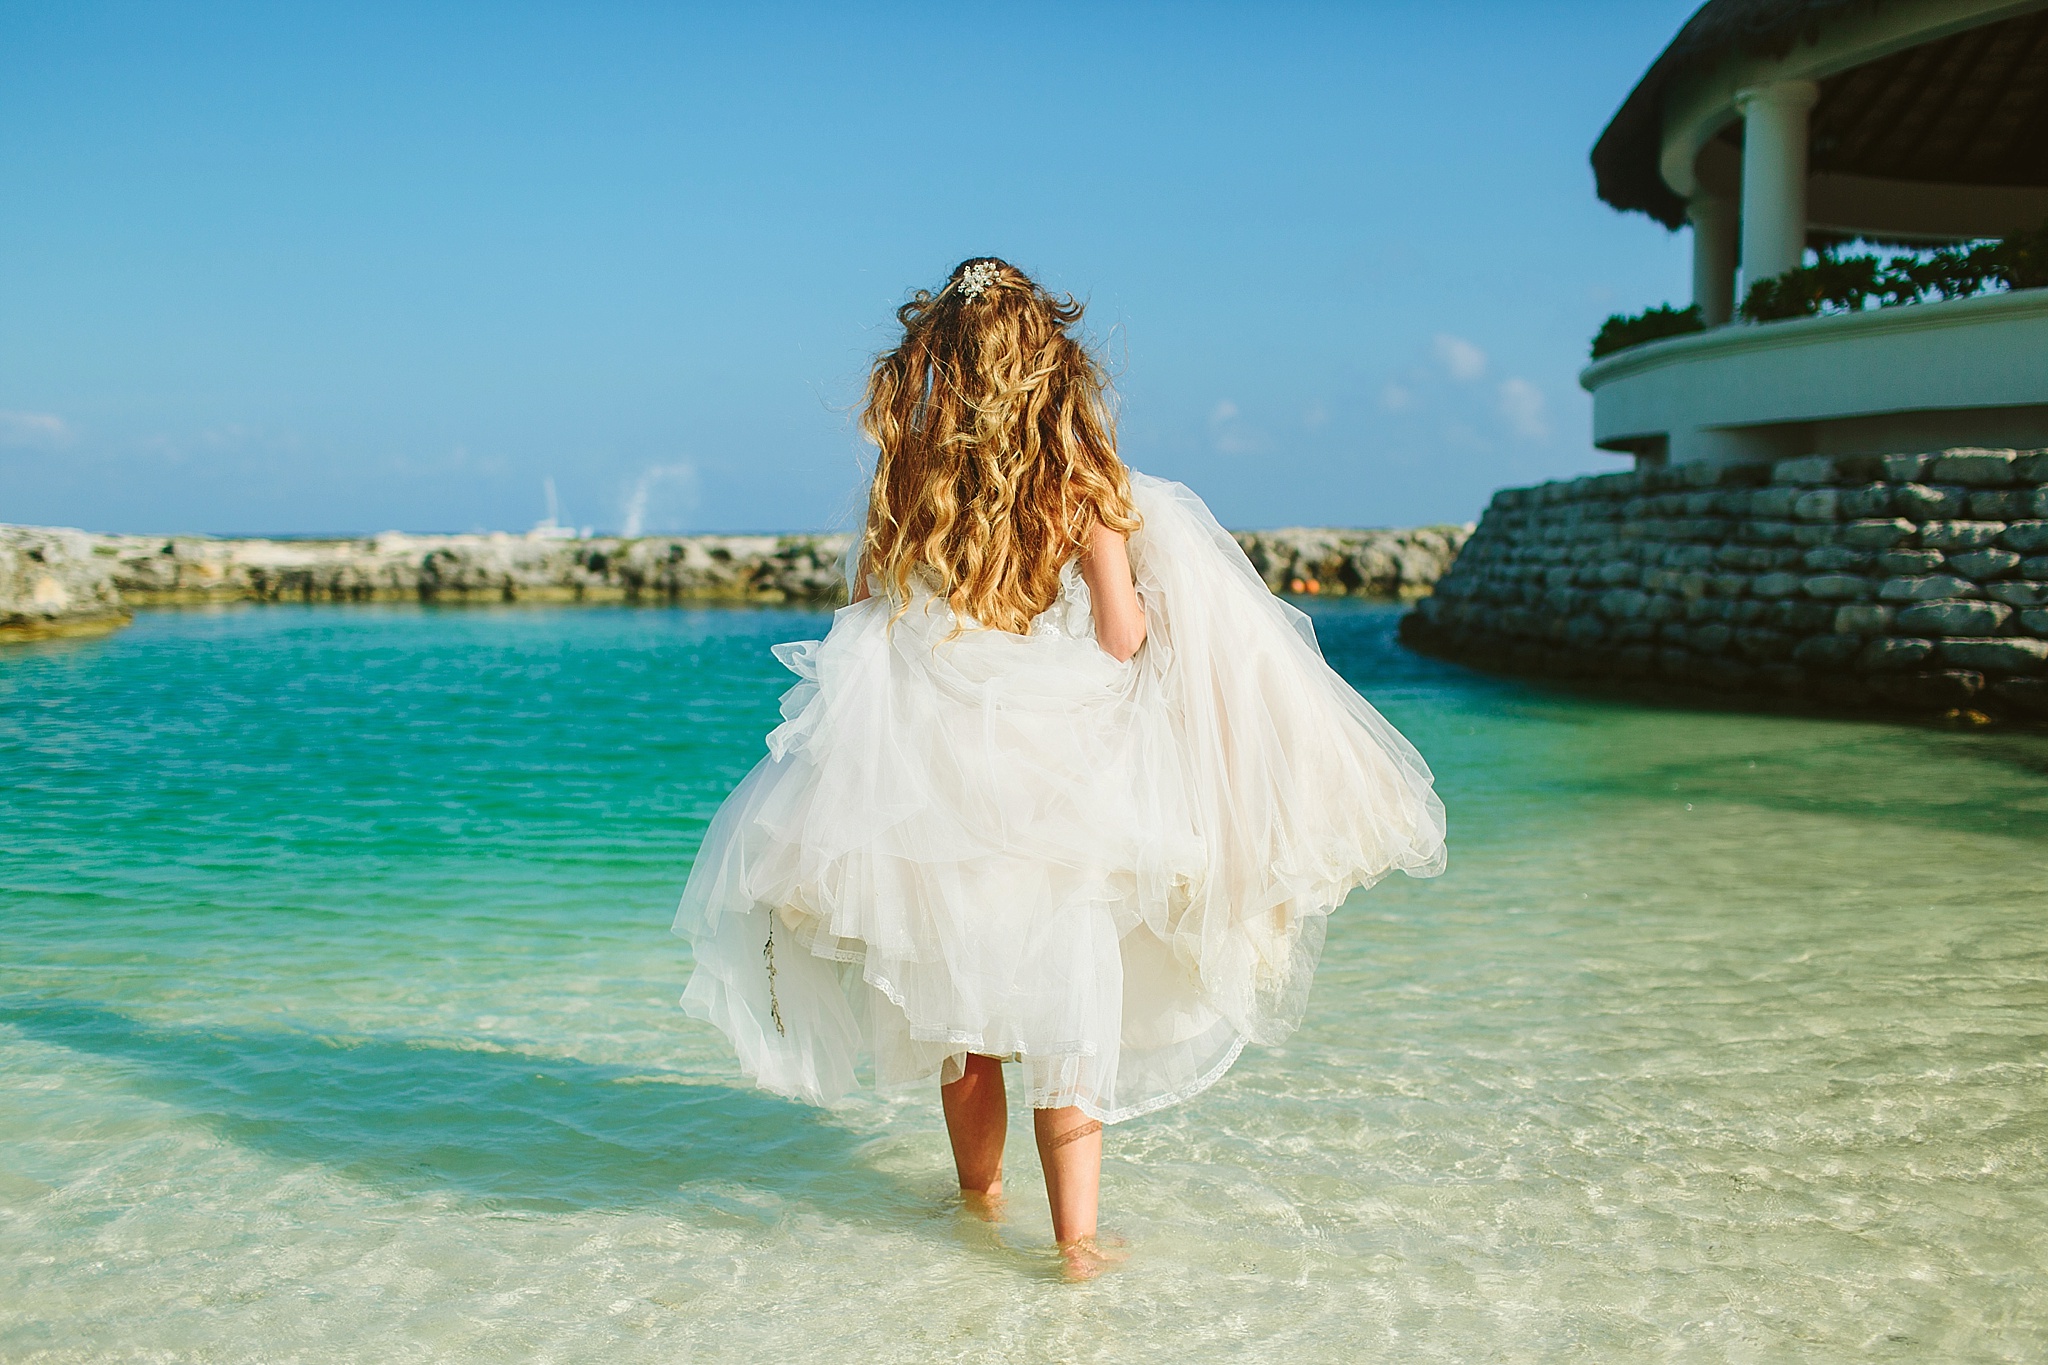 Hard Rock Riviera Mexico Puerto Adventuras Wedding Photos Bride Walking in the Ocean